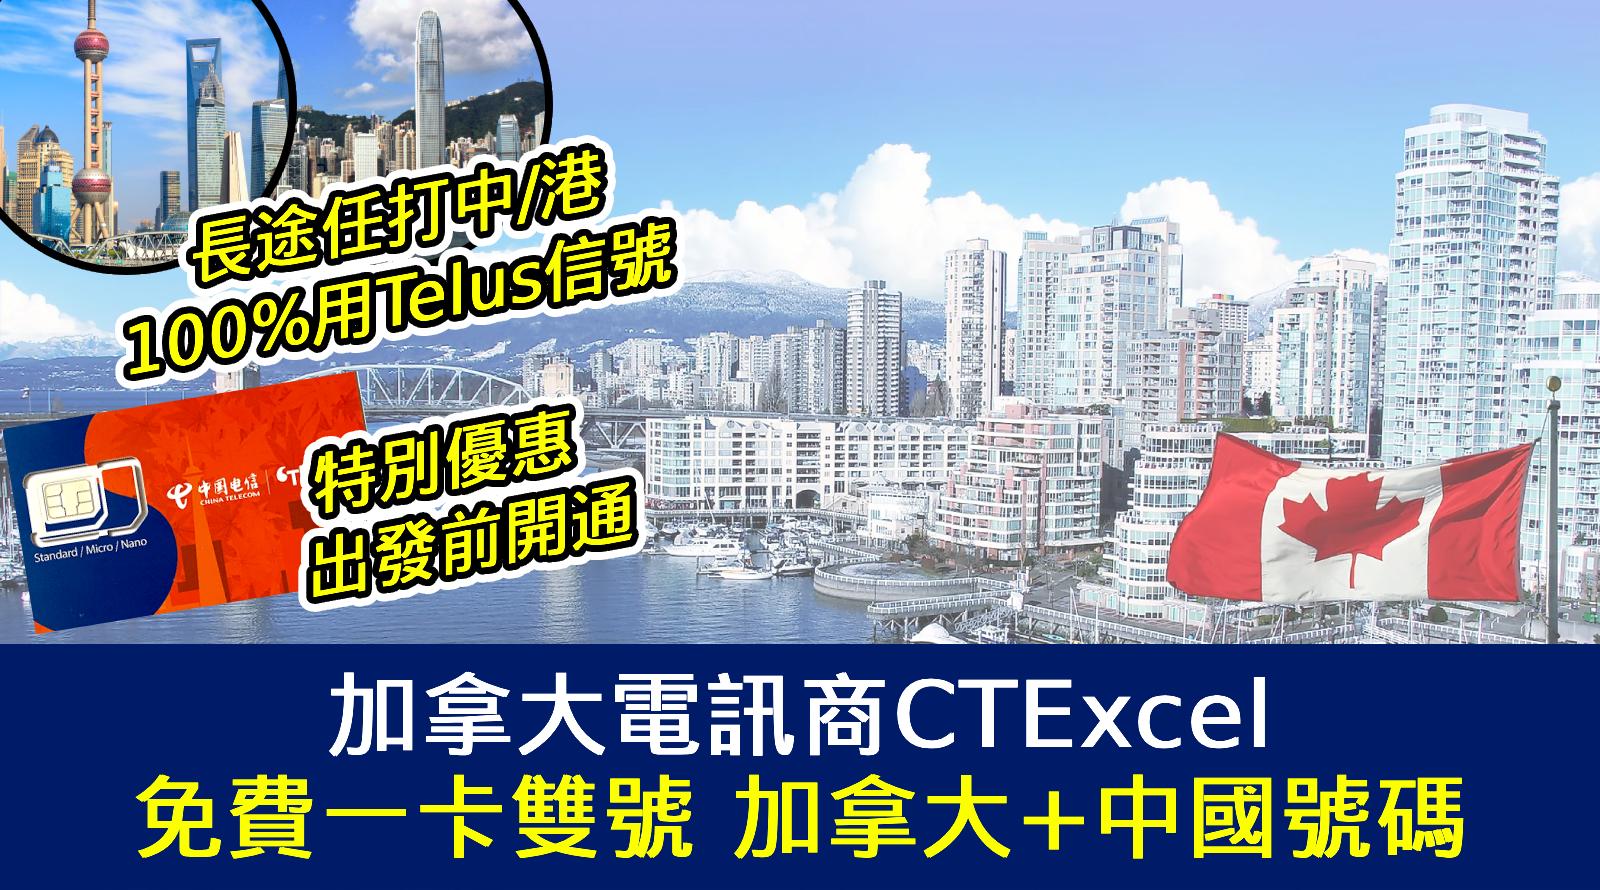 加拿大電訊商CTExcel 100%用Telus信號 長途任打中國大陸香港丨免費一卡雙號 加拿大+中國號碼